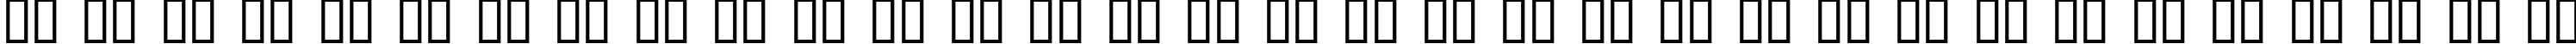 Пример написания русского алфавита шрифтом Augusta Regular